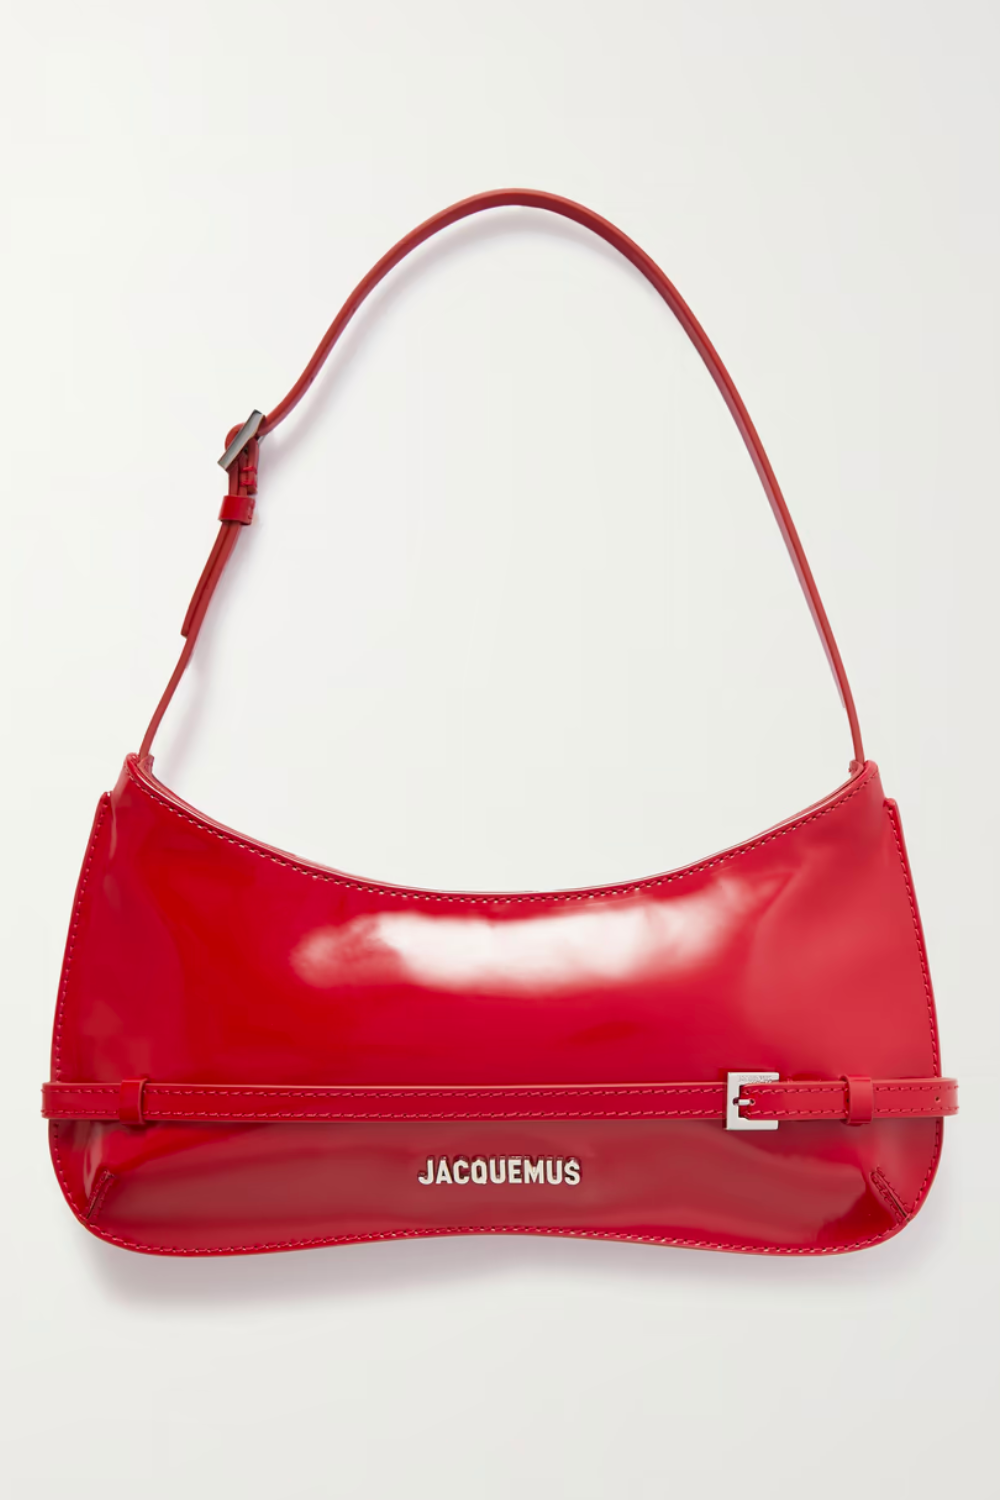 Jacquemus-Red-Bag - Grazia